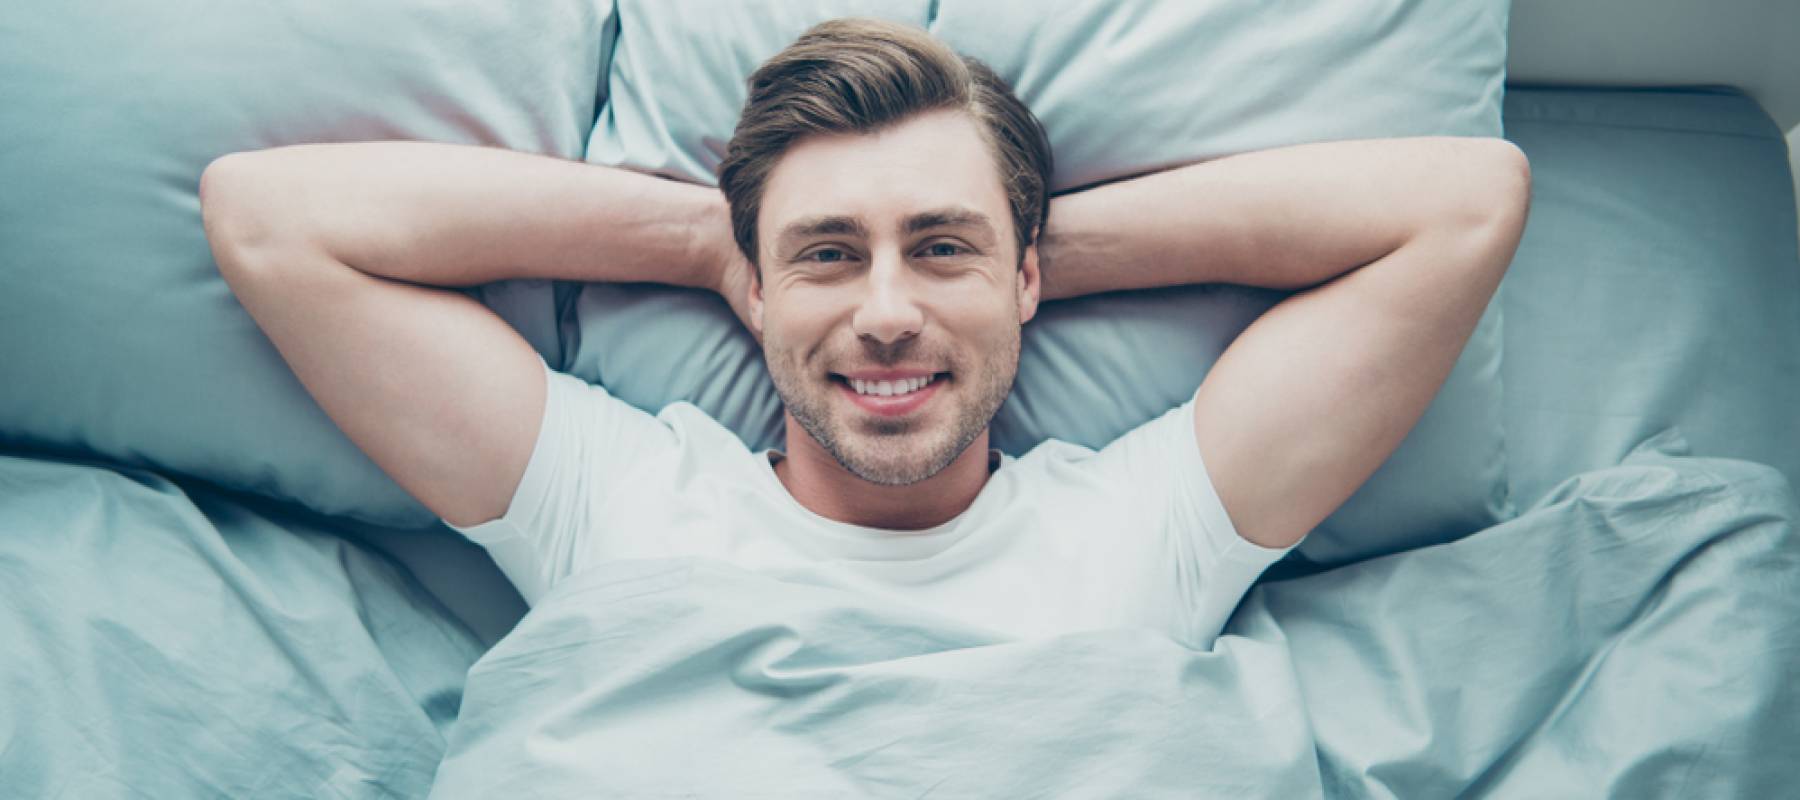 Man lying bed smiling wearing white t-shirt.